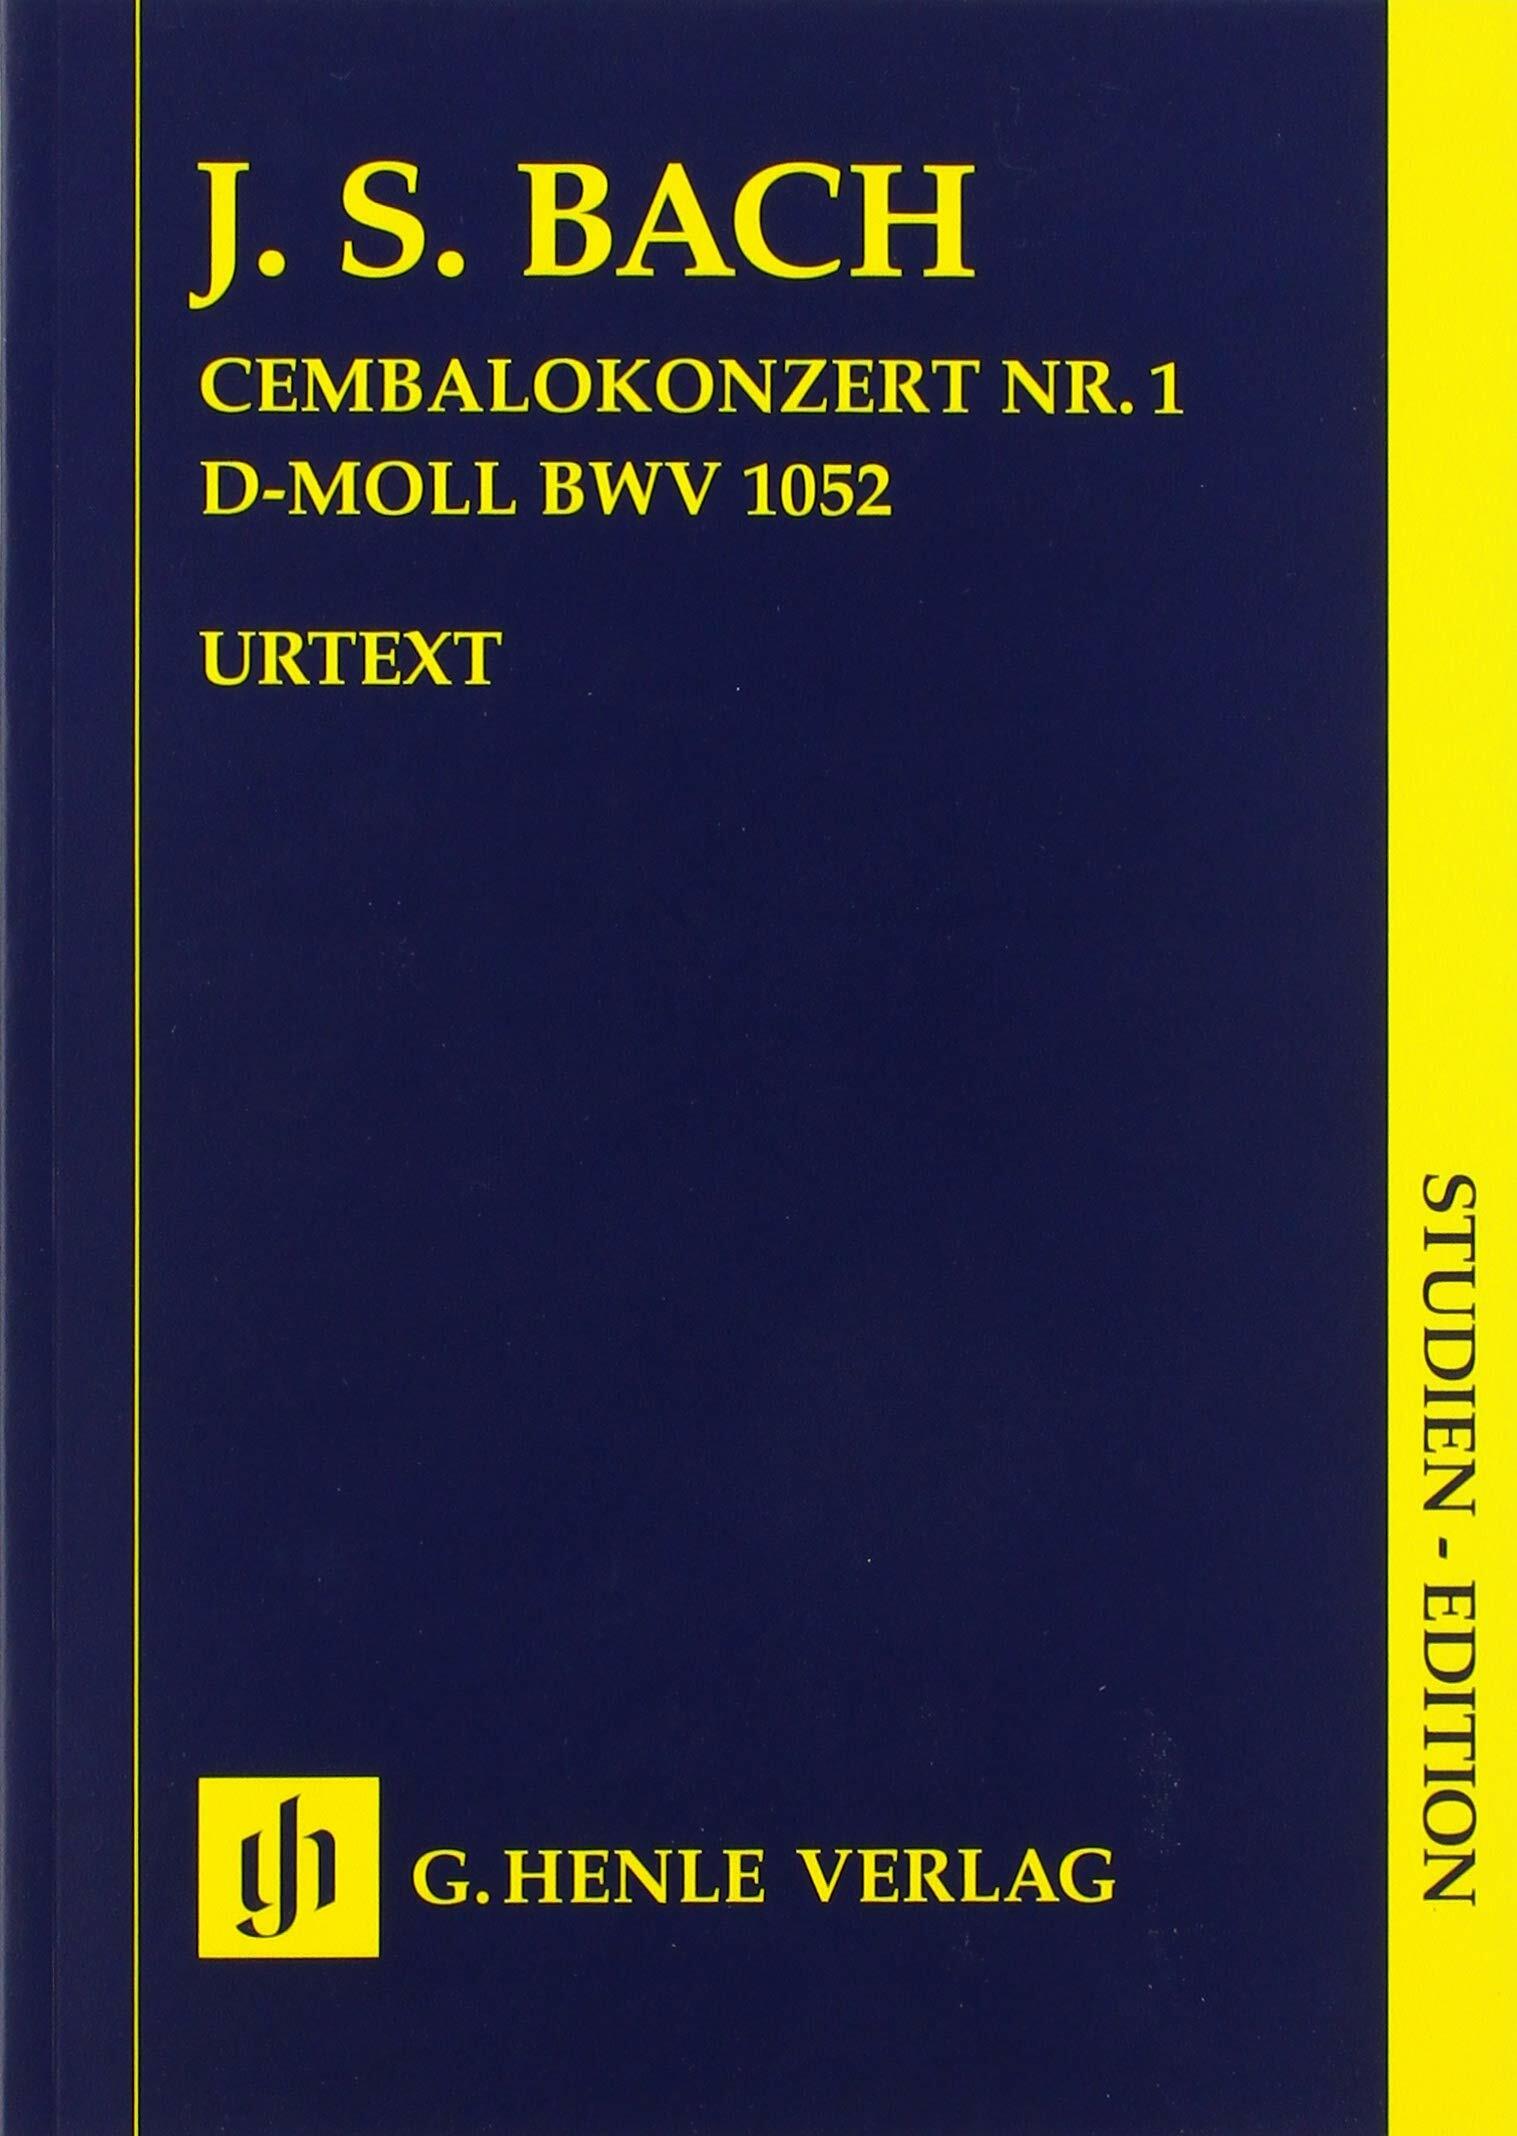 Bach, Johann Sebastian - Cembalokonzert Nr. 1 d-moll BWV 1052 (Paperback)